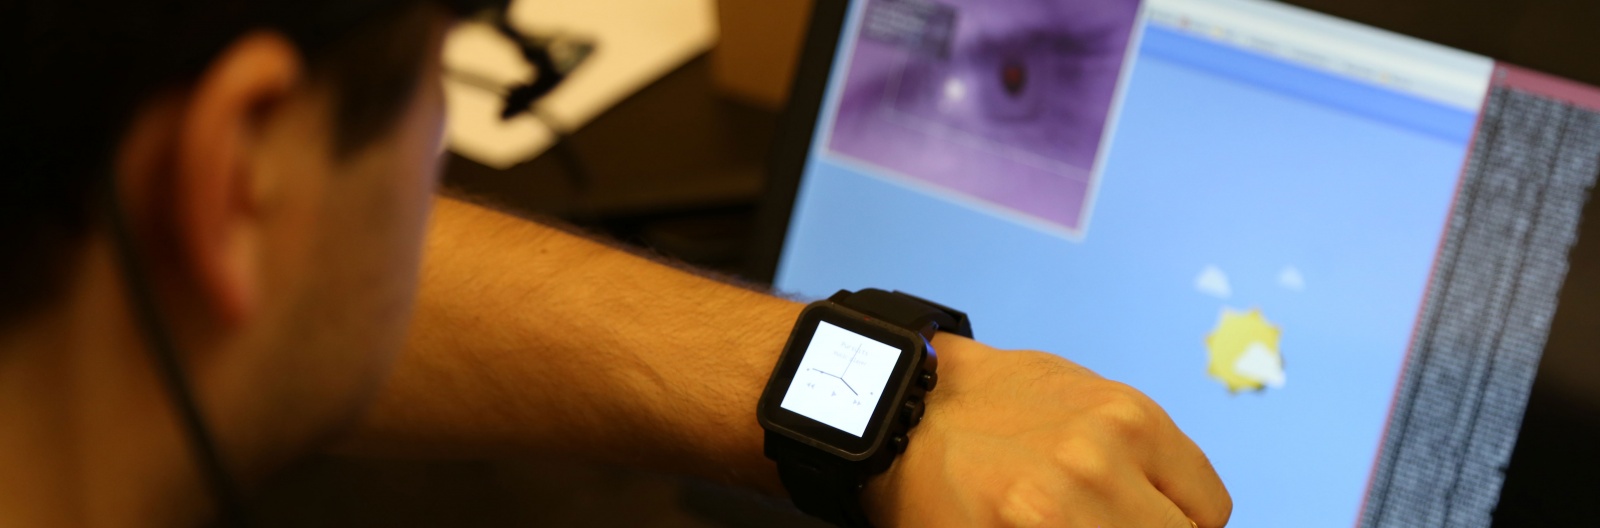 Технология Orbits для умных часов: управляем функциями устройства взглядом - 1